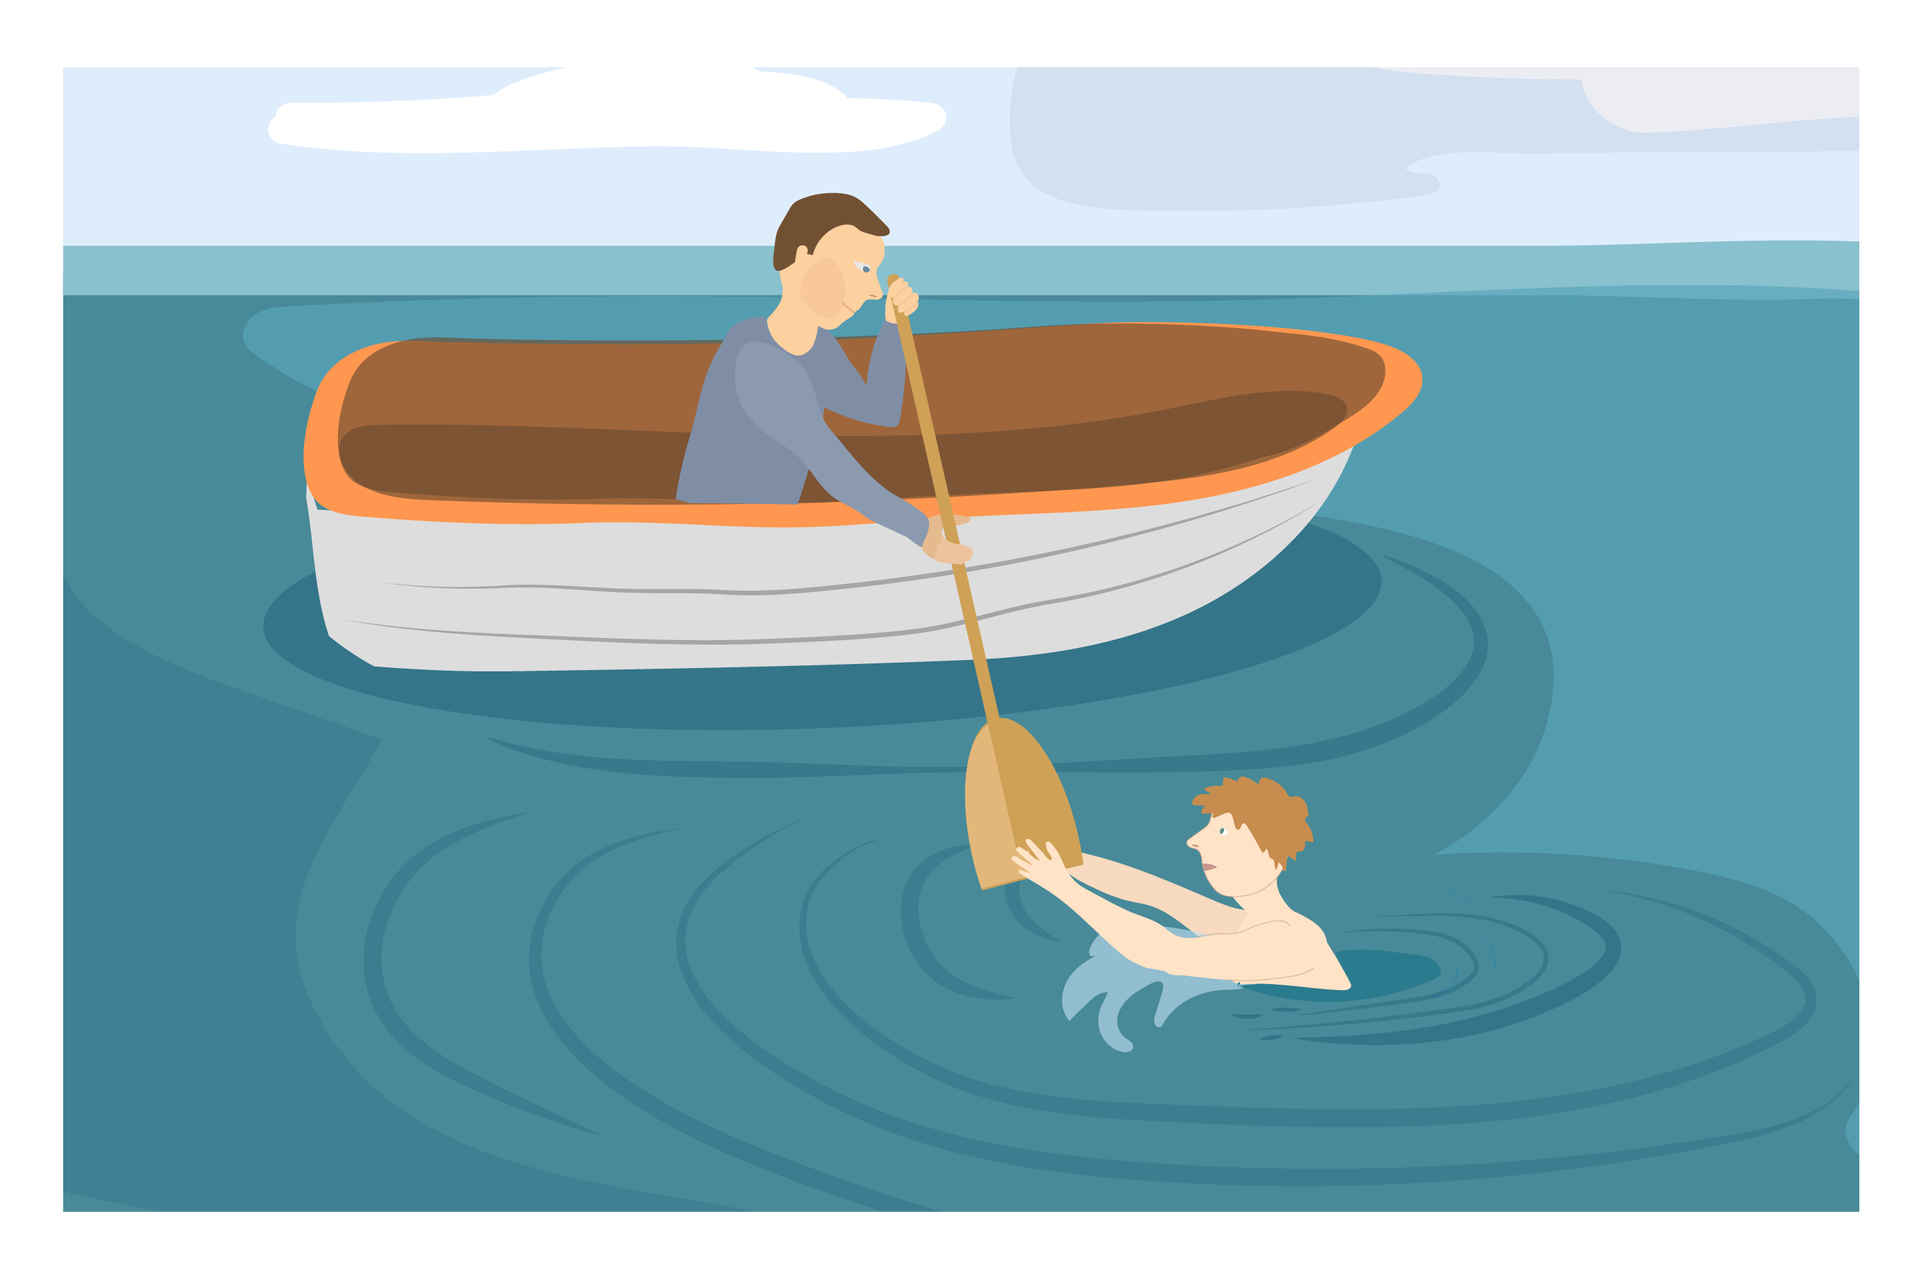 Ilustracja 4. Na wodzie dryfuje drewniana łódka. W łódce siedzi mężczyzna i podaje wiosło osobie tonącej. Koniec wiosła trzyma osoba tonąca. Instrukcja: jeśli możesz podpłyń łódką.